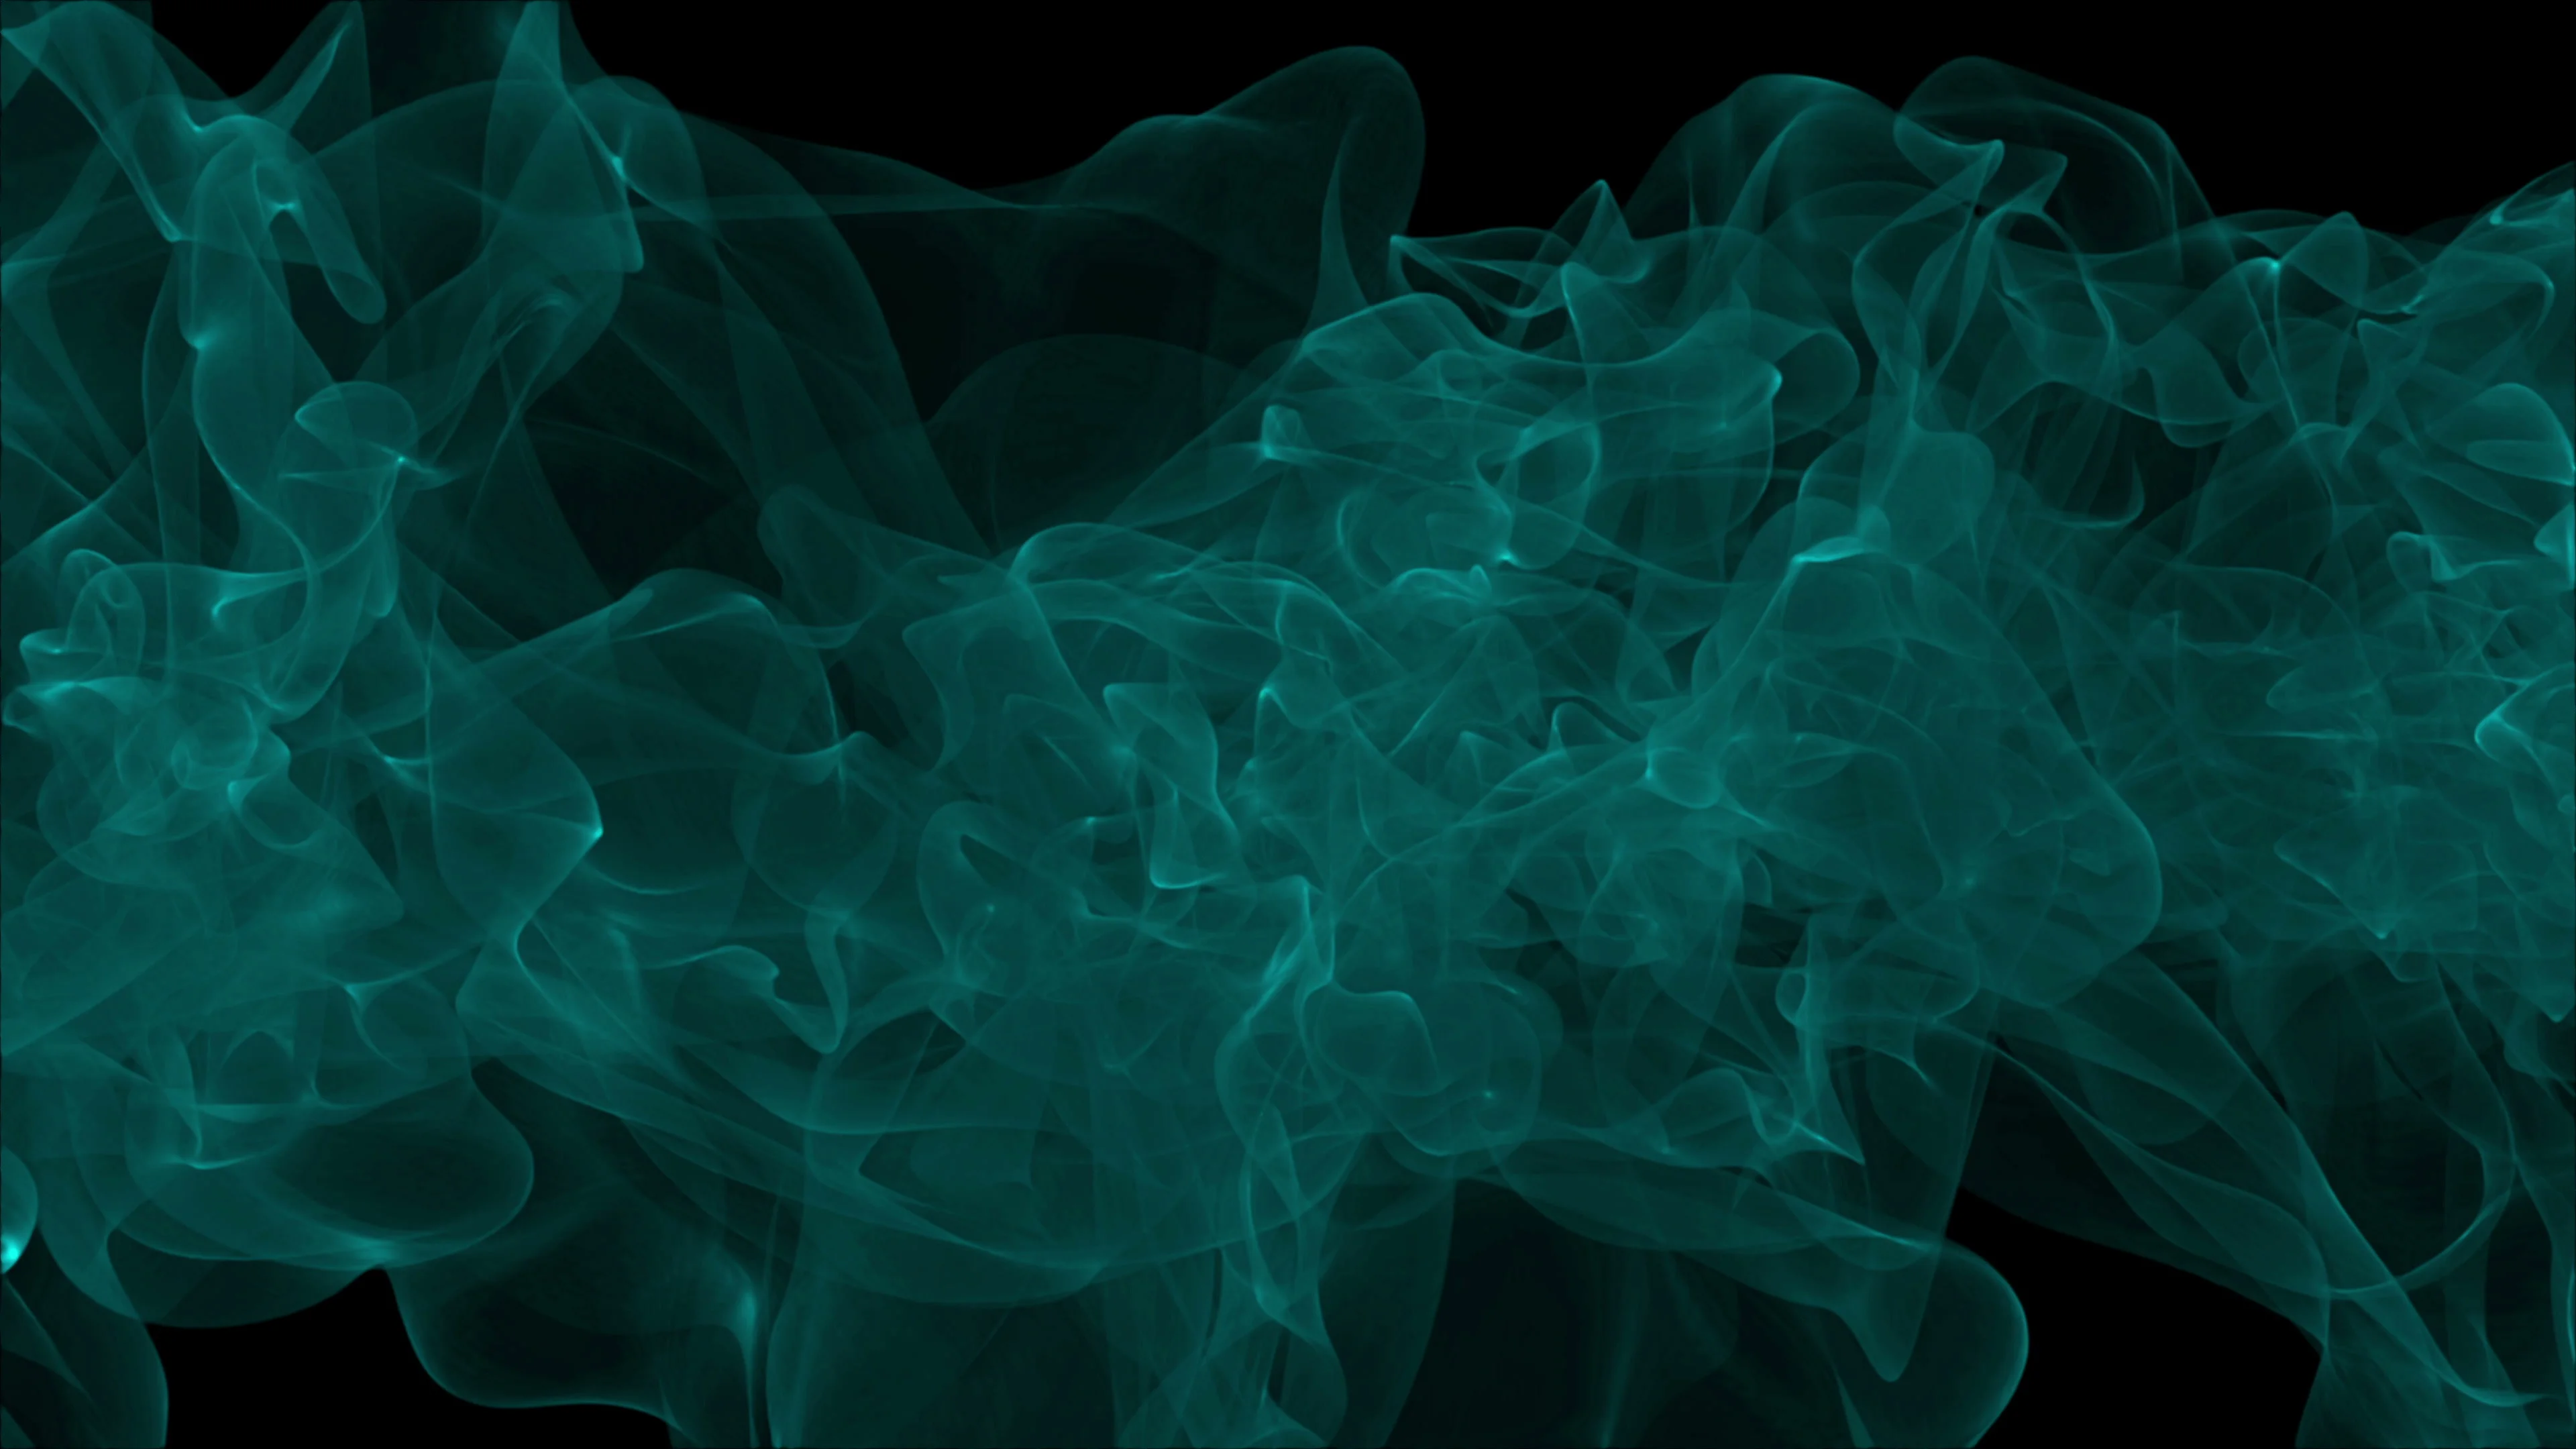 Smoke green wallpaper free image download